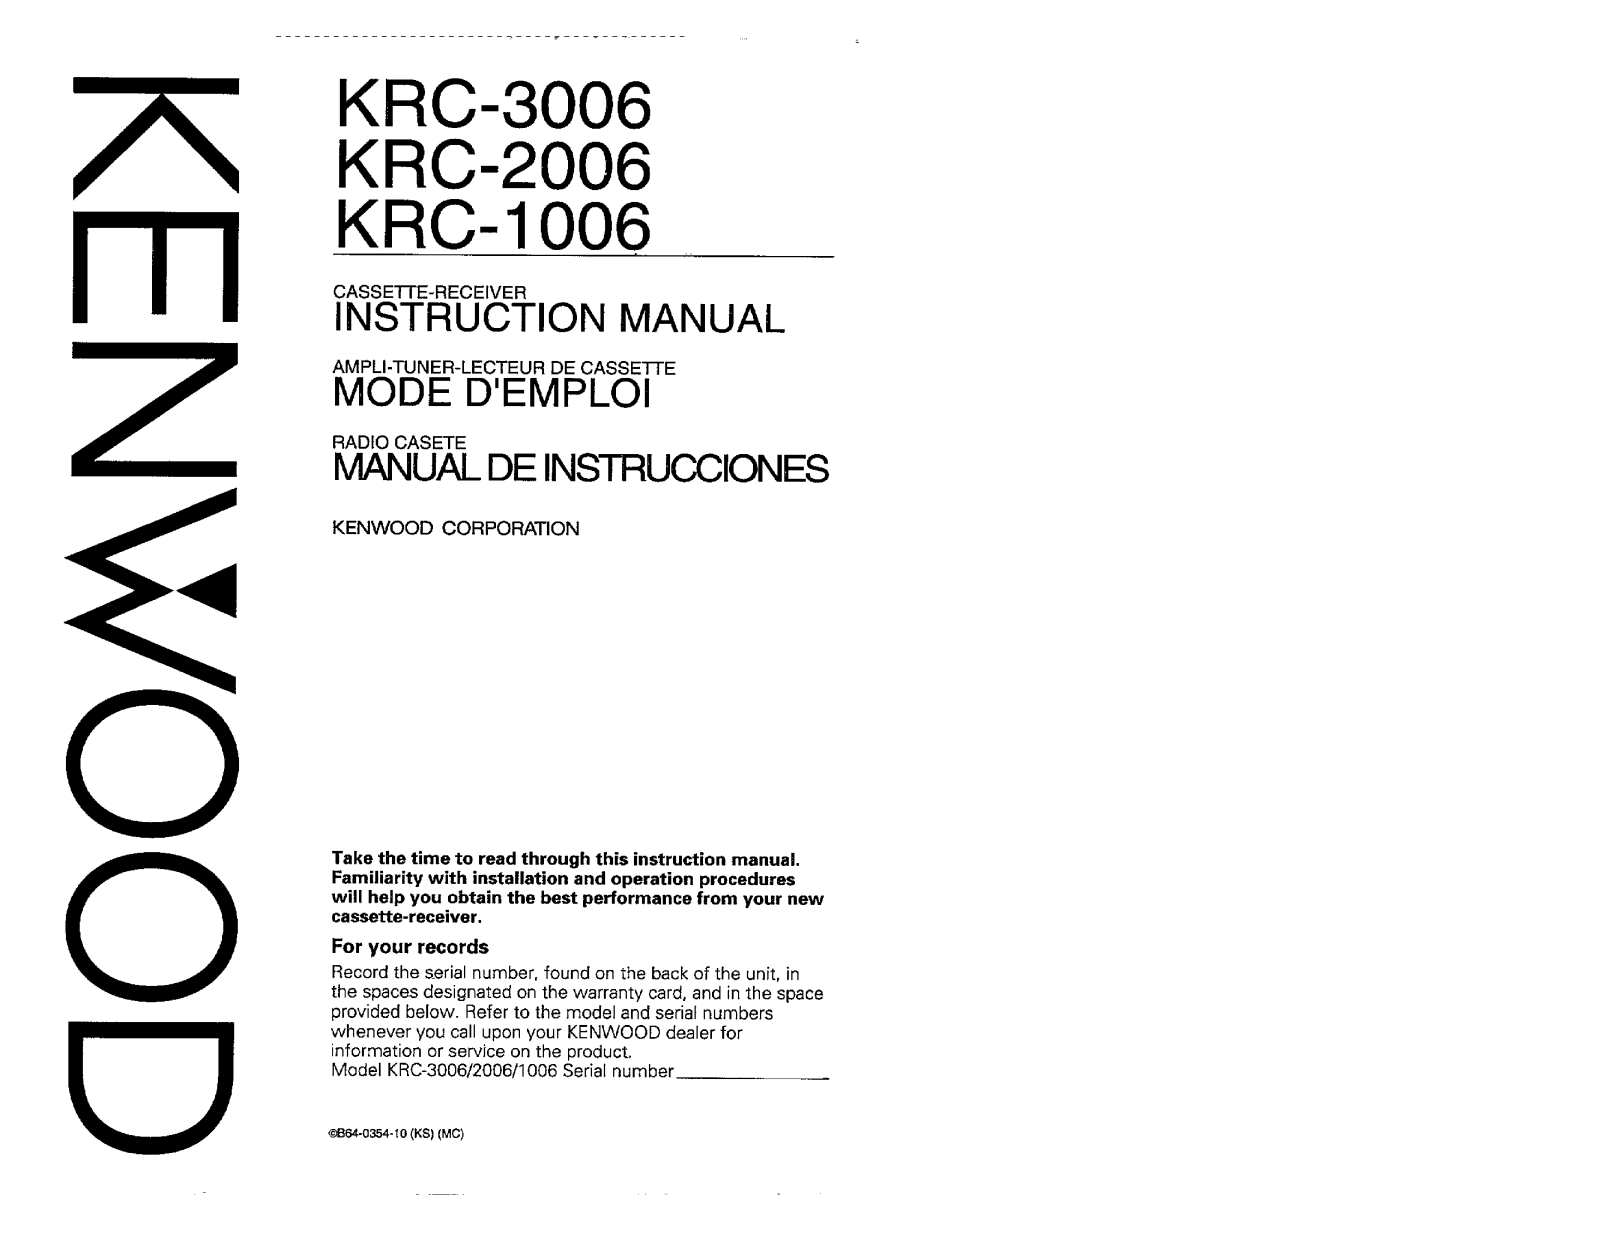 Kenwood KRC-3006, KRC-1006, KRC-2006 Owner's Manual